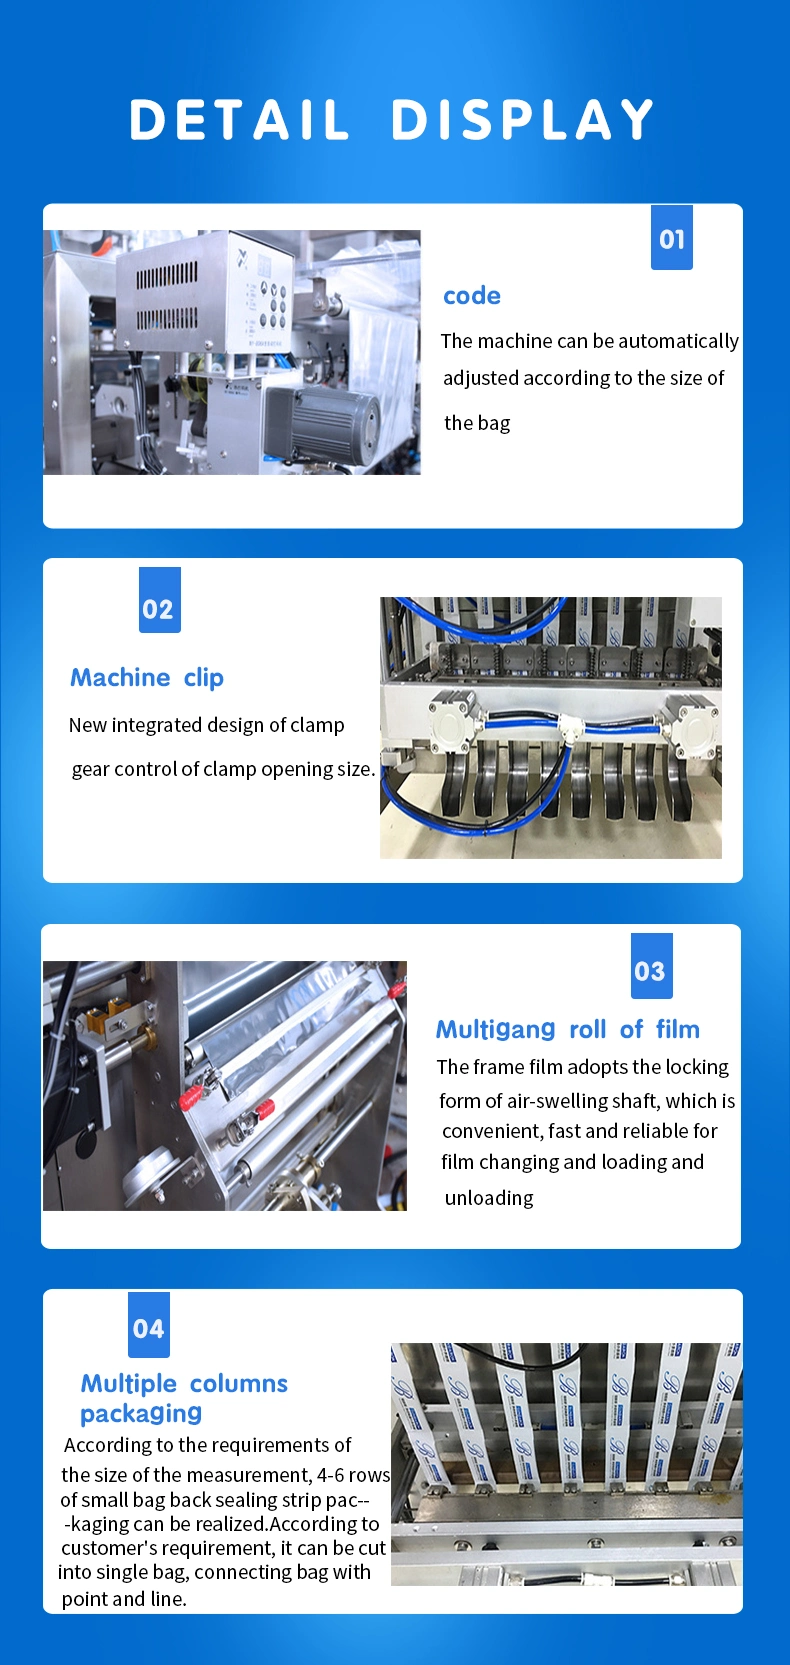 Liquid Multi - Row Packaging Machine, Drying Agent Multilane Packaging Machine, Multilane Packaging Machine